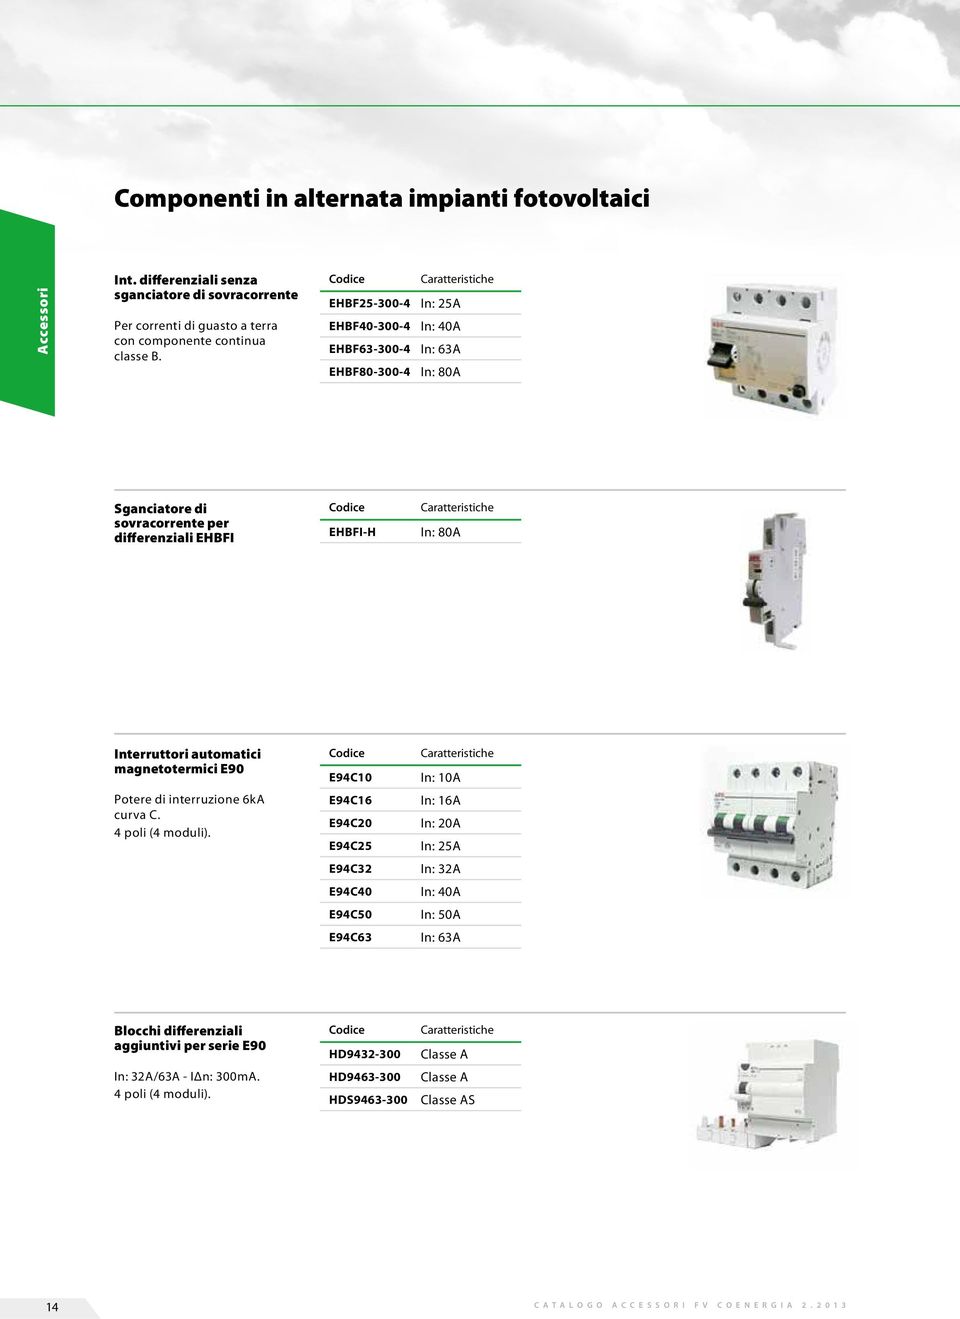 Interruttori automatici magnetotermici E90 E94C10 Caratteristiche In: 10A Potere di interruzione 6kA curva C. 4 poli (4 moduli).